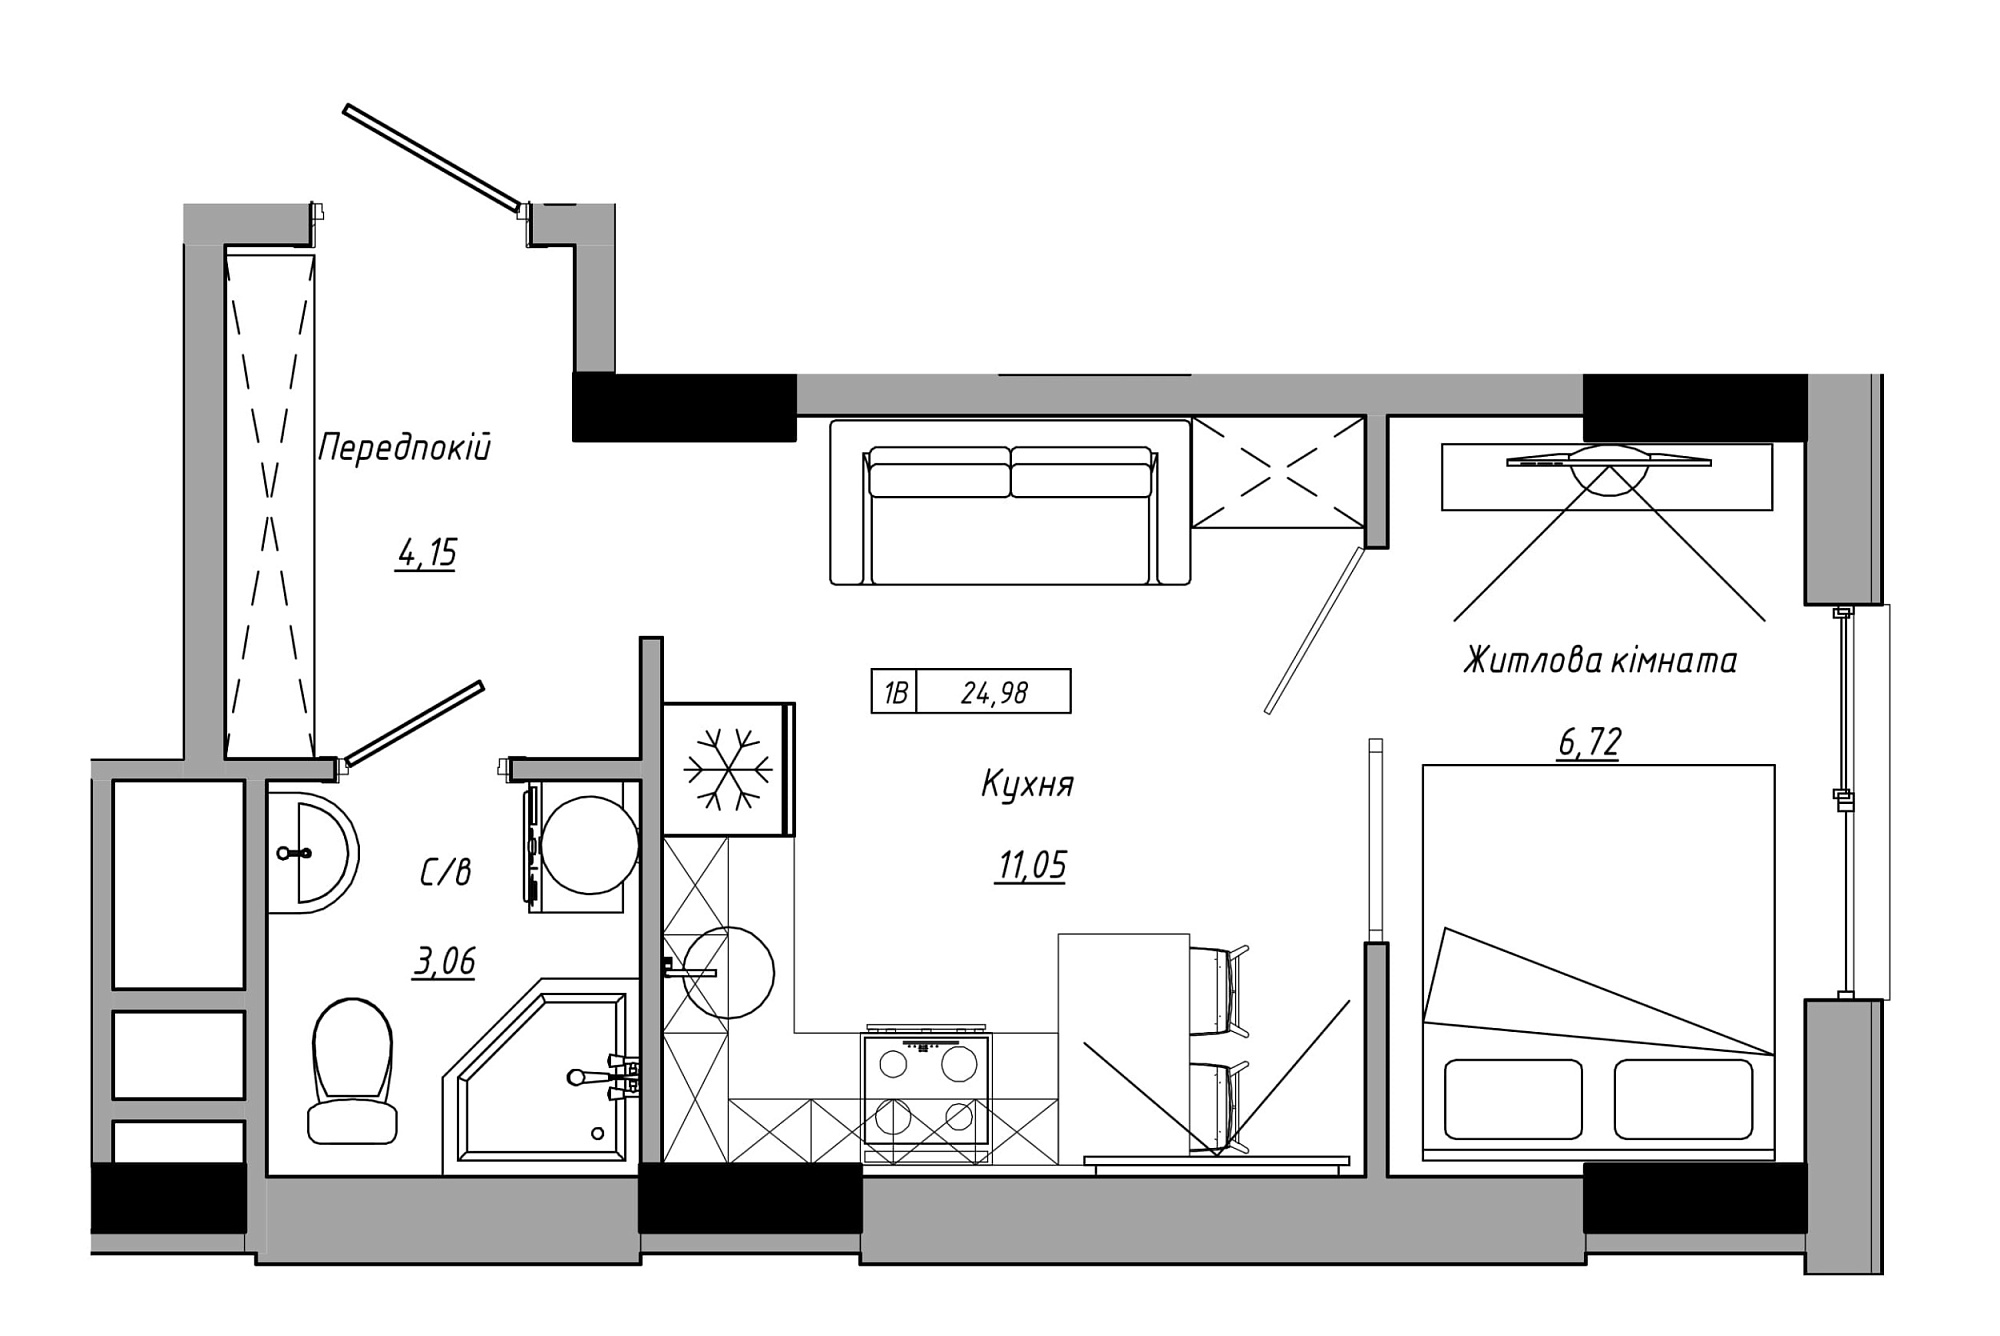 Планування 1-к квартира площею 24.98м2, AB-21-05/00004.